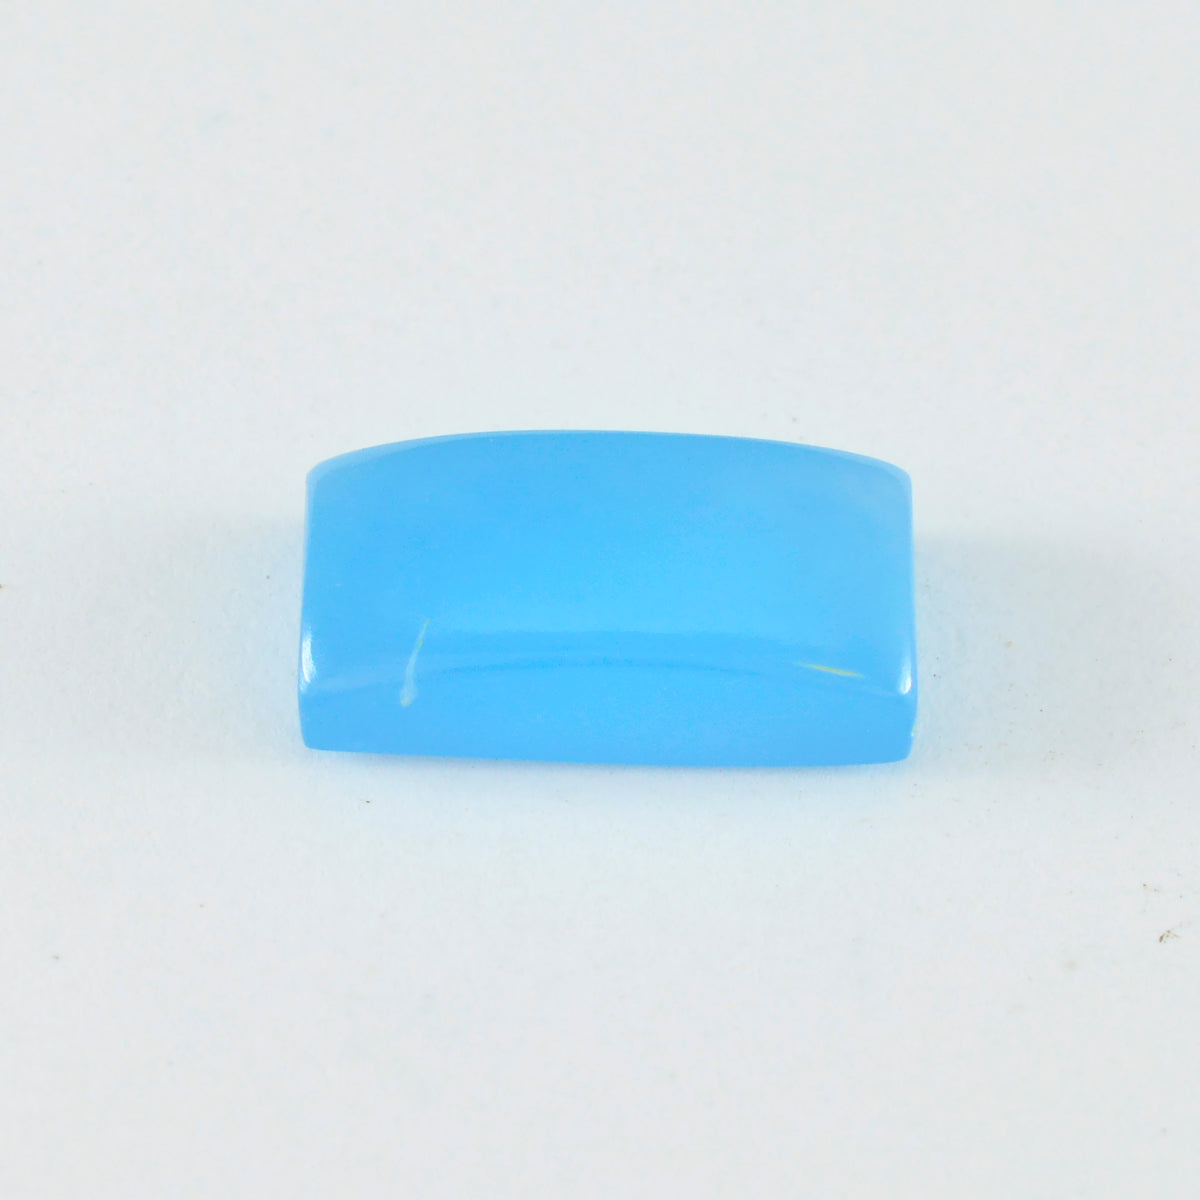 riyogems 1шт синий халцедон кабошон 9х18 мм форма багет А+1 камень качества